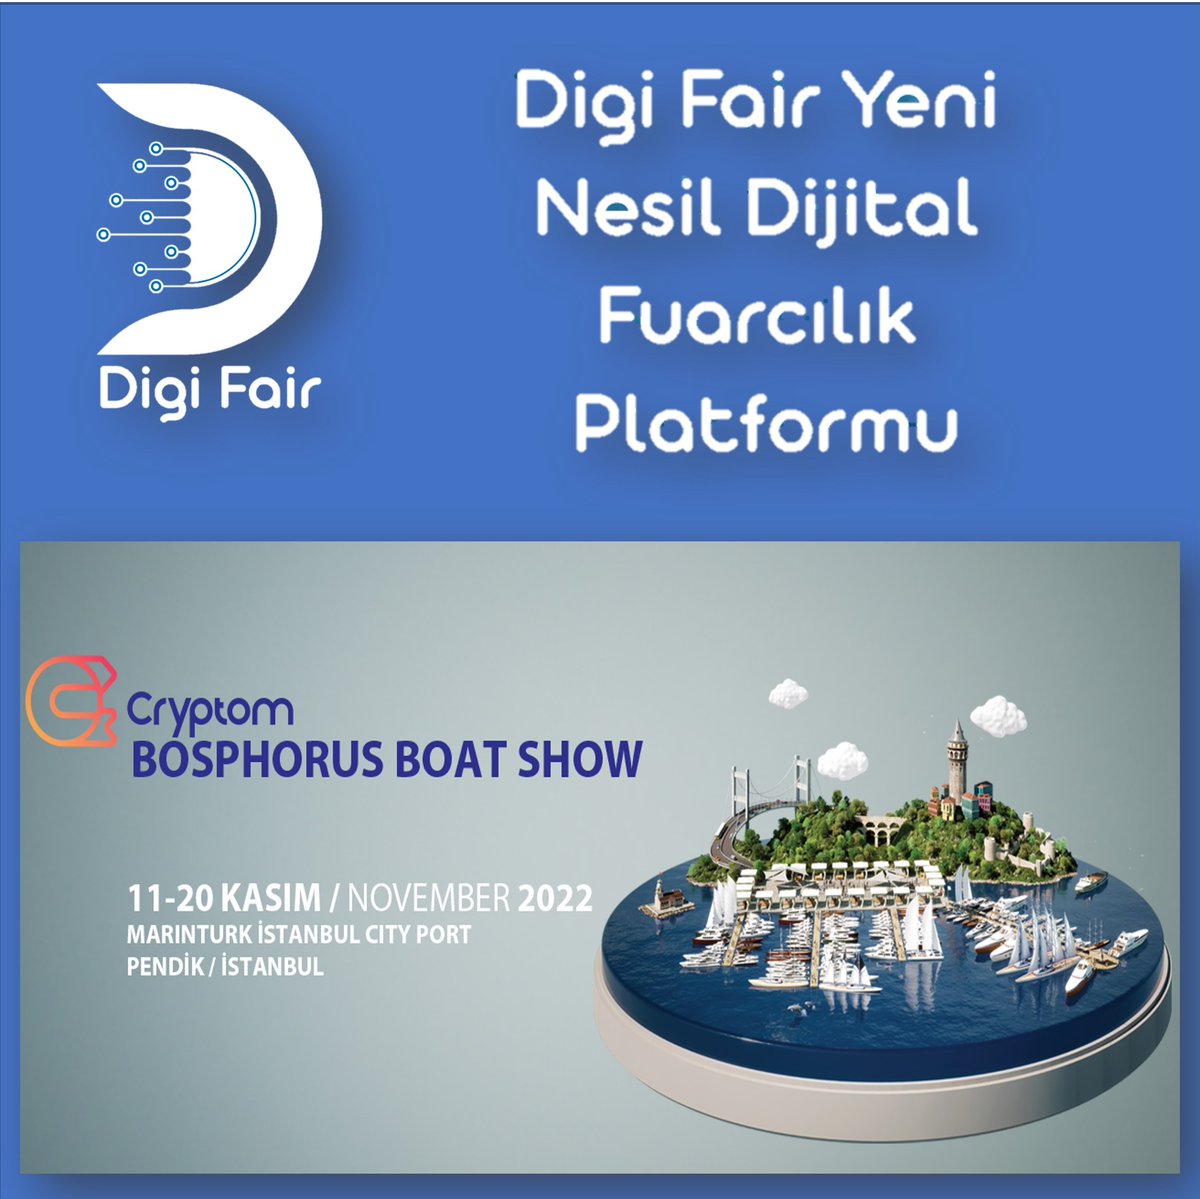 Cryptom Bosphorus Boat Show 11 – 20 Kasım 2022 tarihleri arasında Marinturk İstanbul City Port Denizcilik sektörünün lider markalarına ev sahipliği yapacak.
#digifair #fuar #cryptom #bosphorusboatshow #kasım #İstanbul #marınturk #edfair #boatshowexpo  #boatshowpendikexpo #edfuar